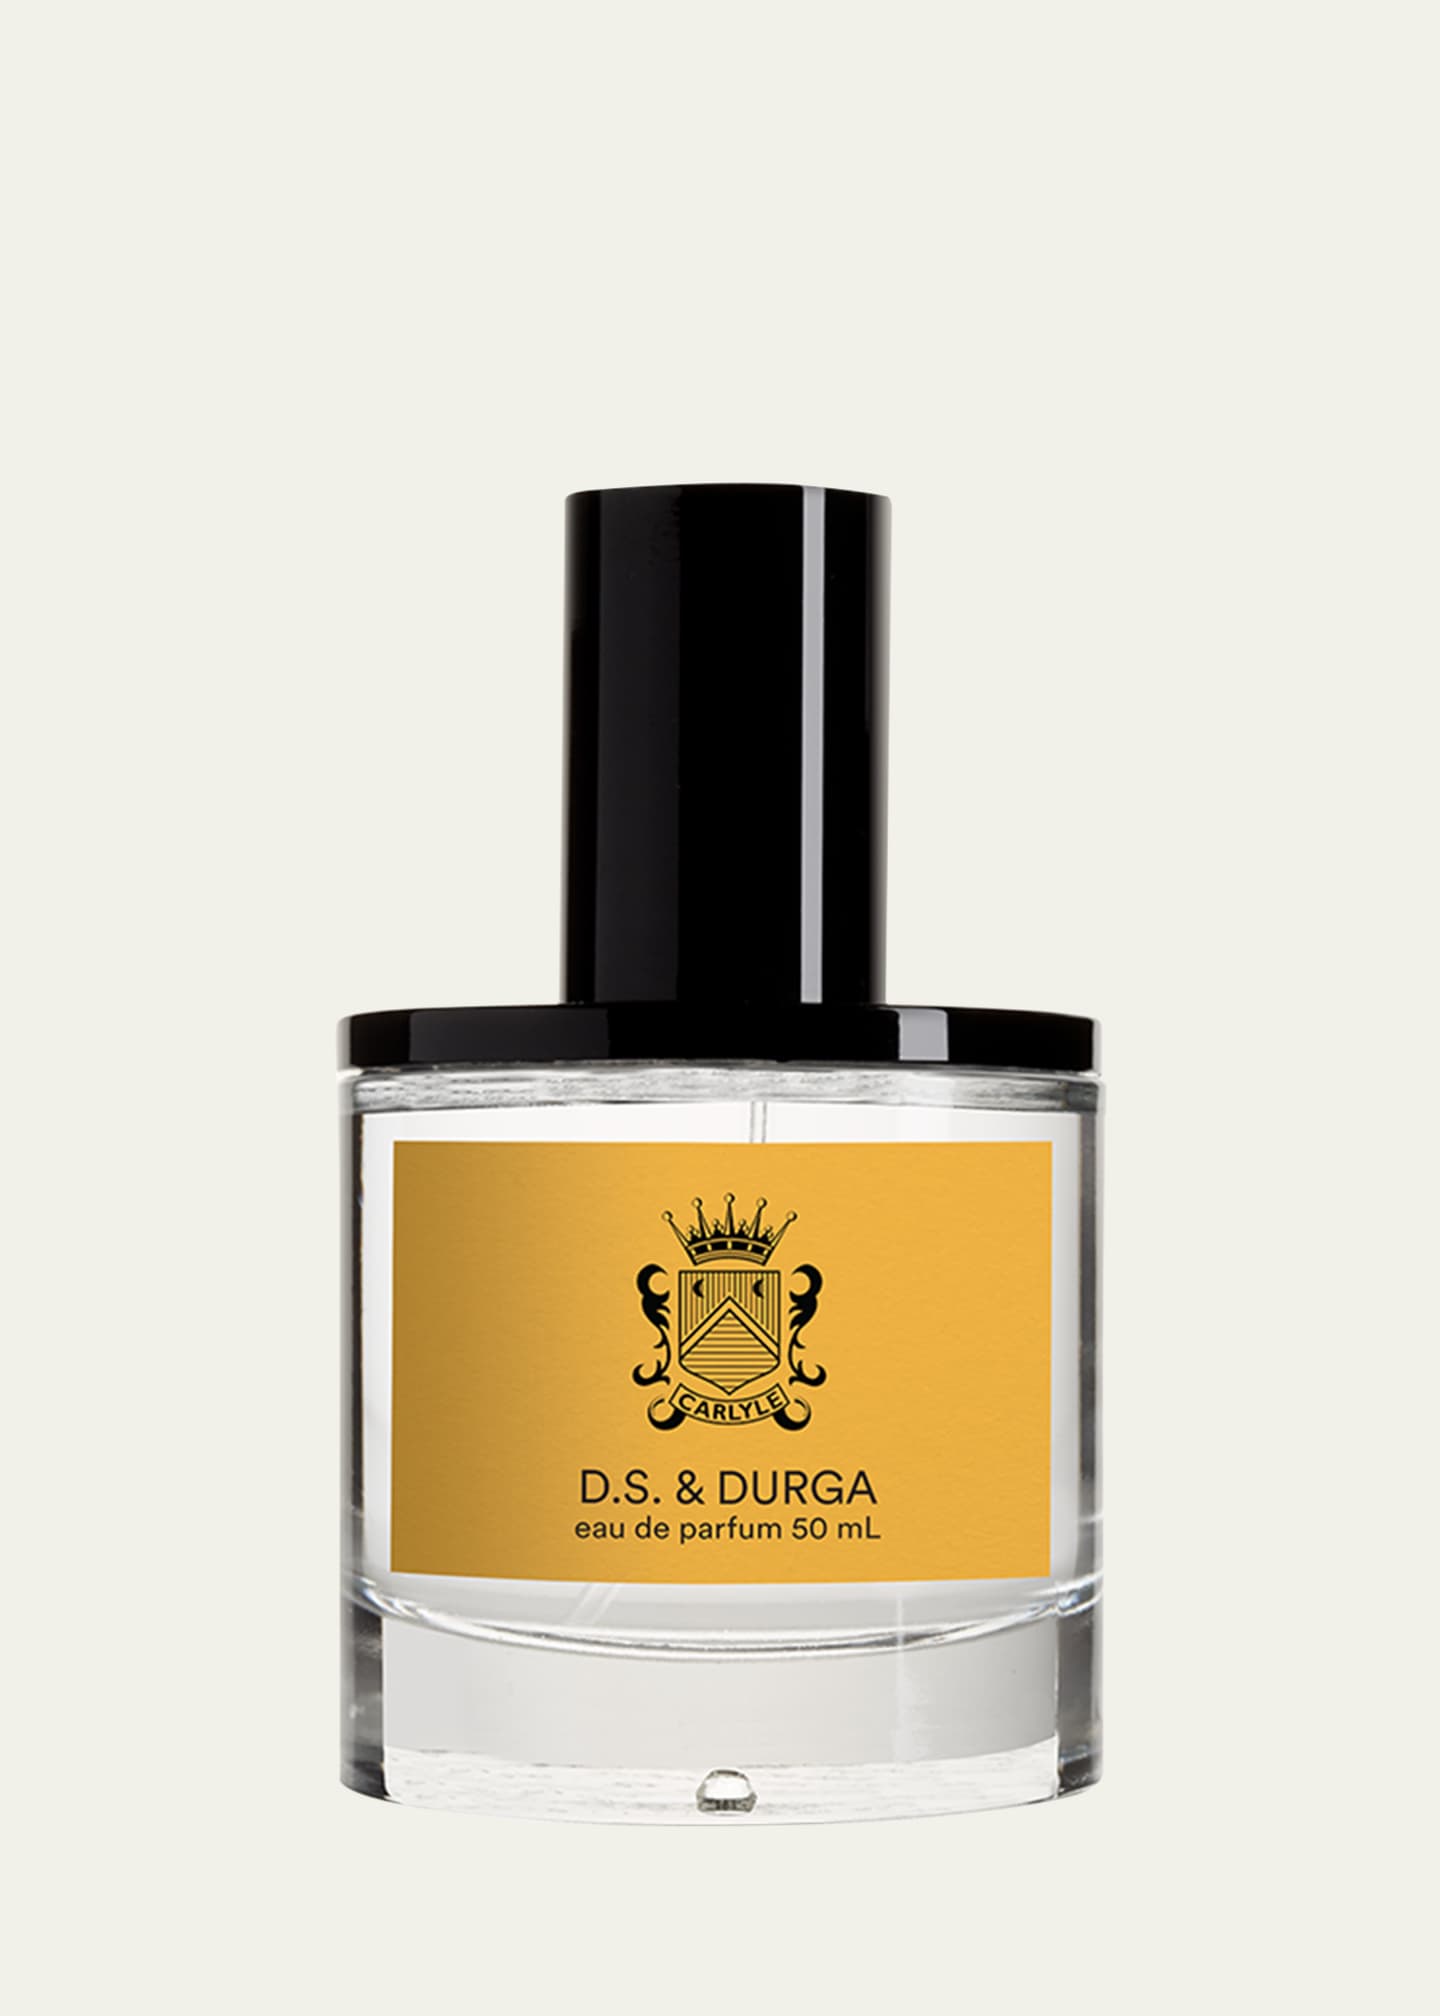 D.S. & DURGA Carlyle Eau de Parfum, 1.7 oz. Image 1 of 2